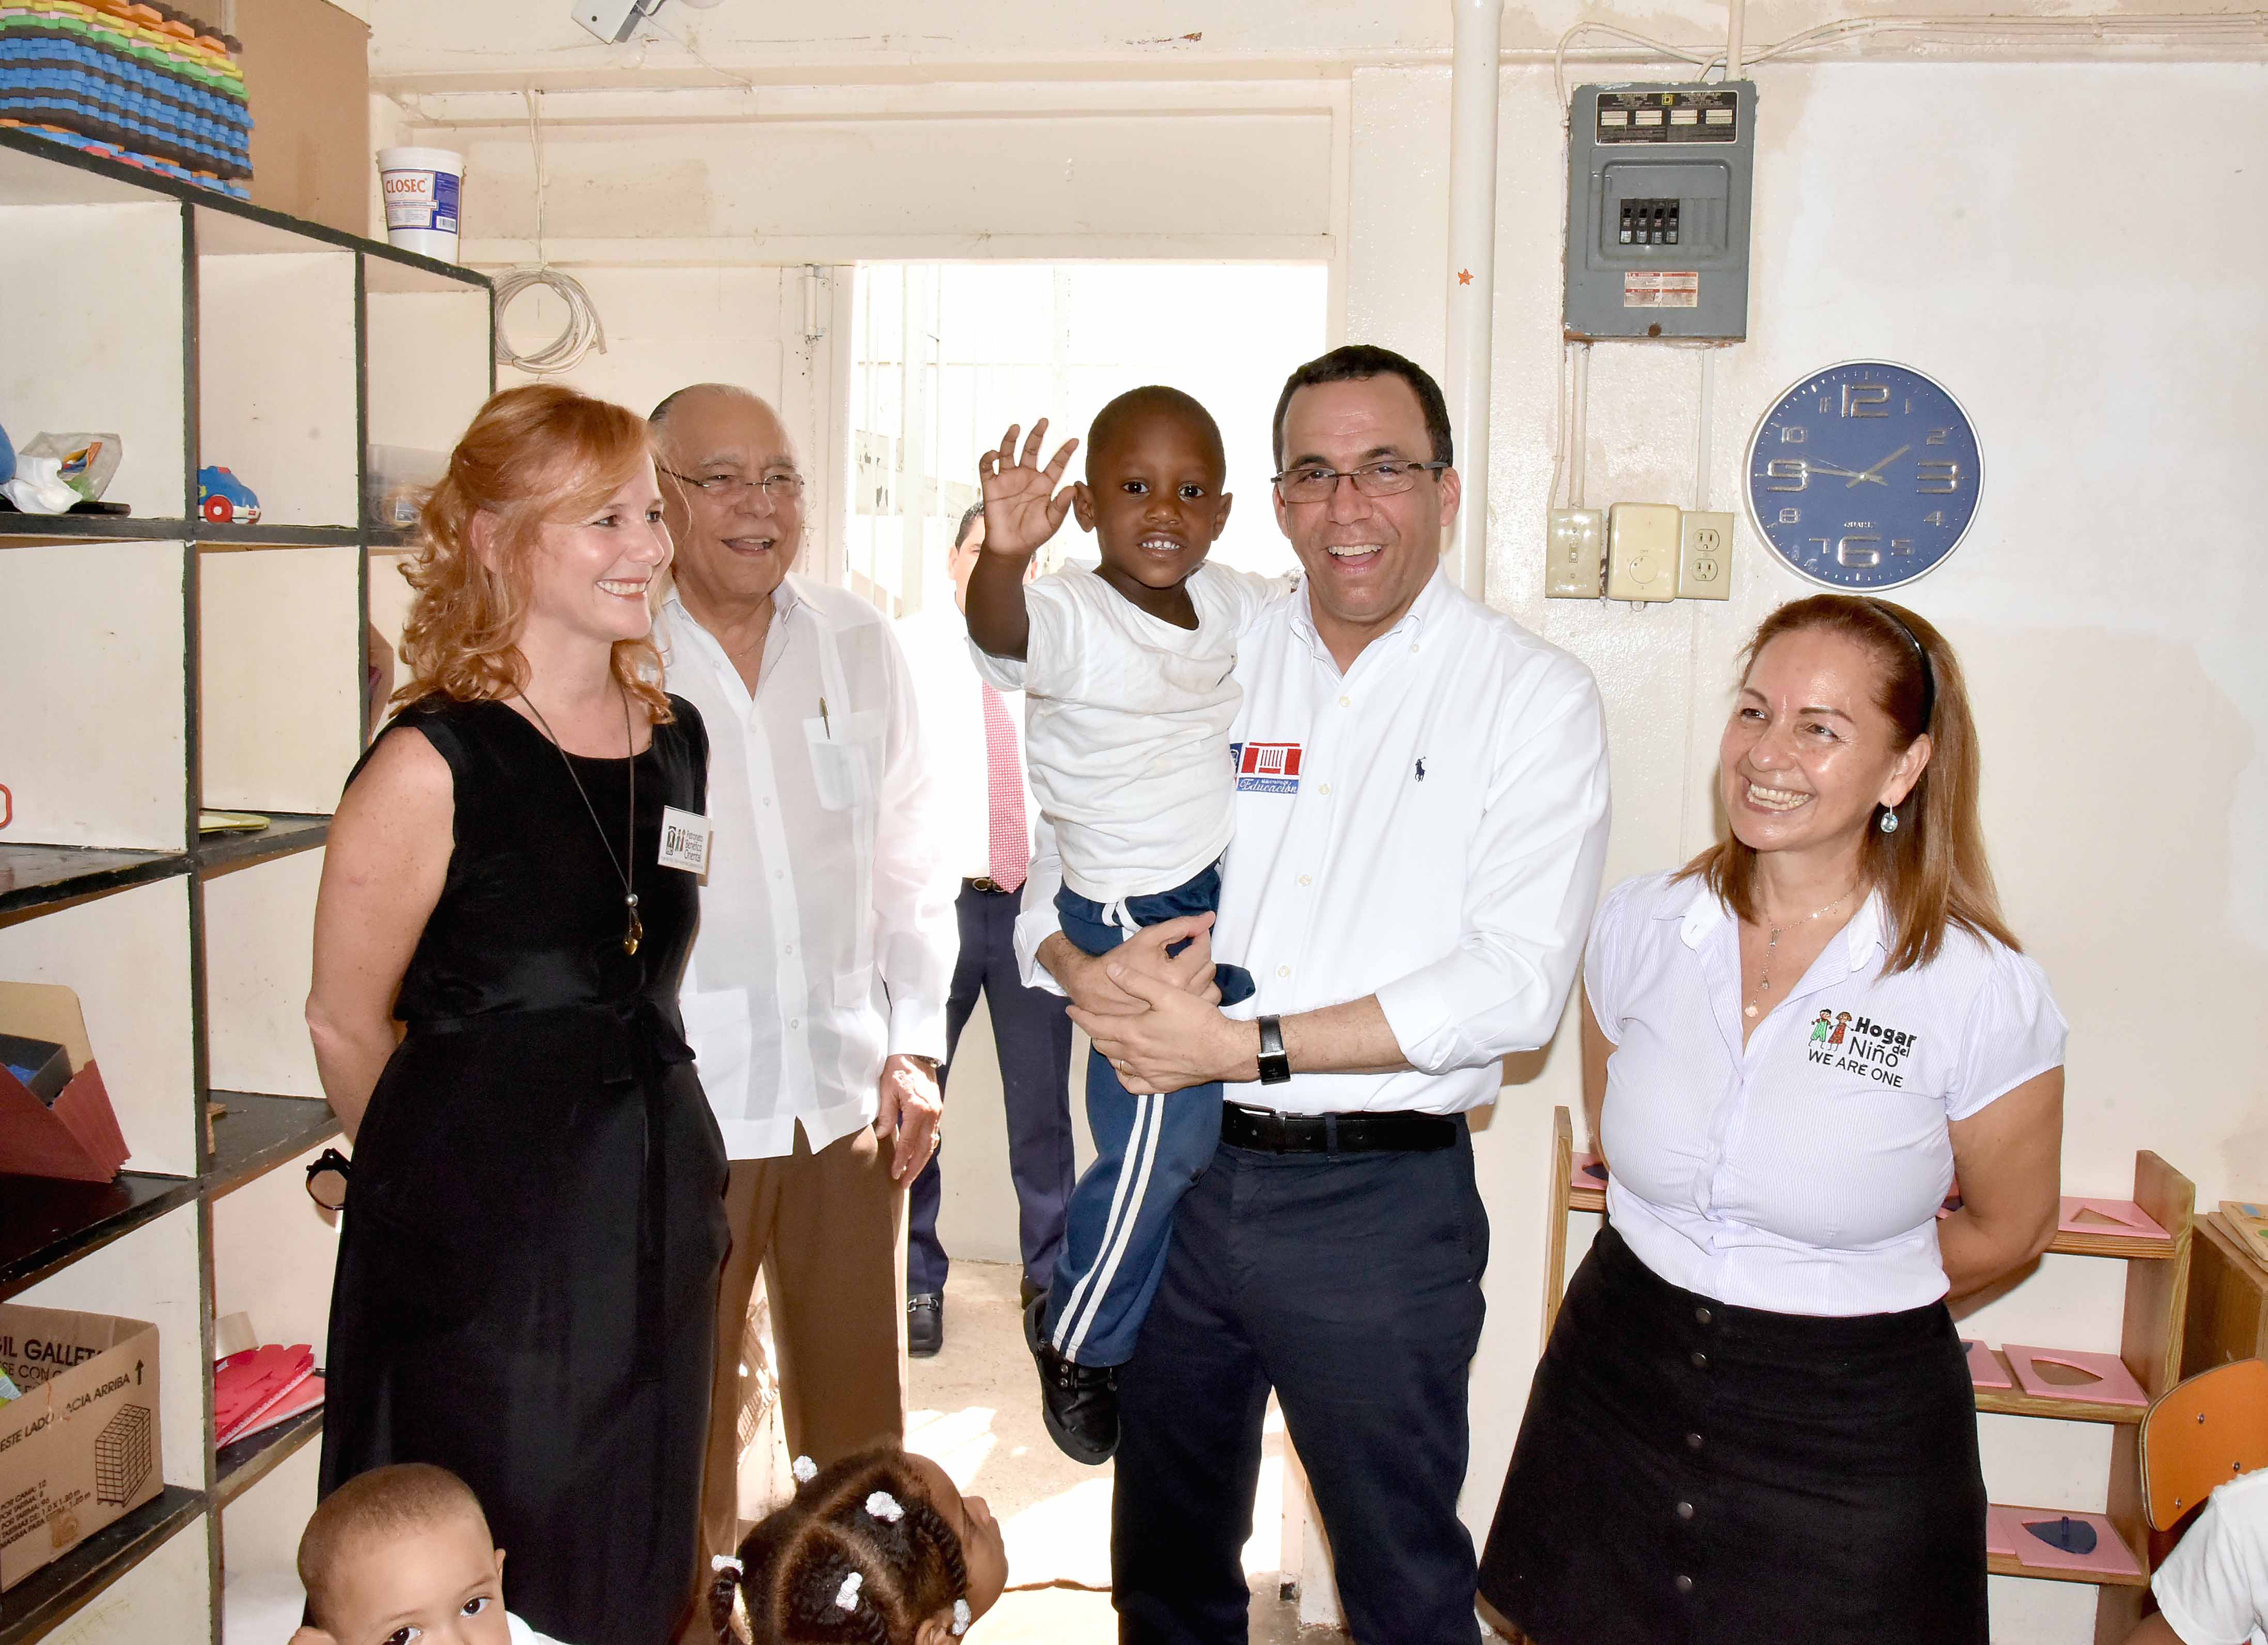  imagen Ministro Andrés Navarro soriendo mientras carga a niño rodeado por miembros del Patronato Benéfico Oriental. 